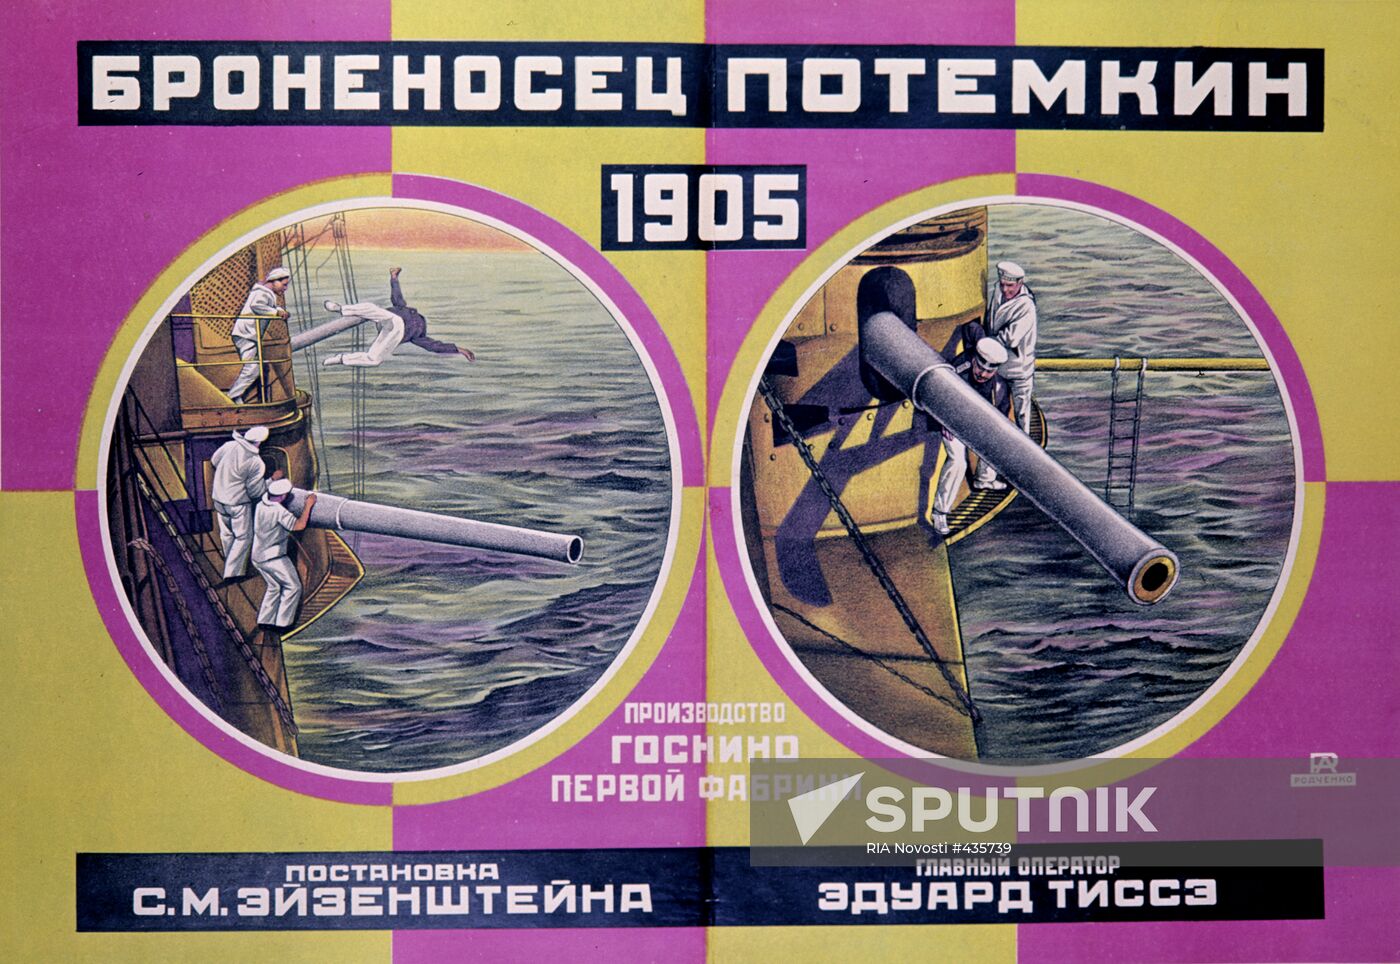 Poster for film "The Potemkin battleship"